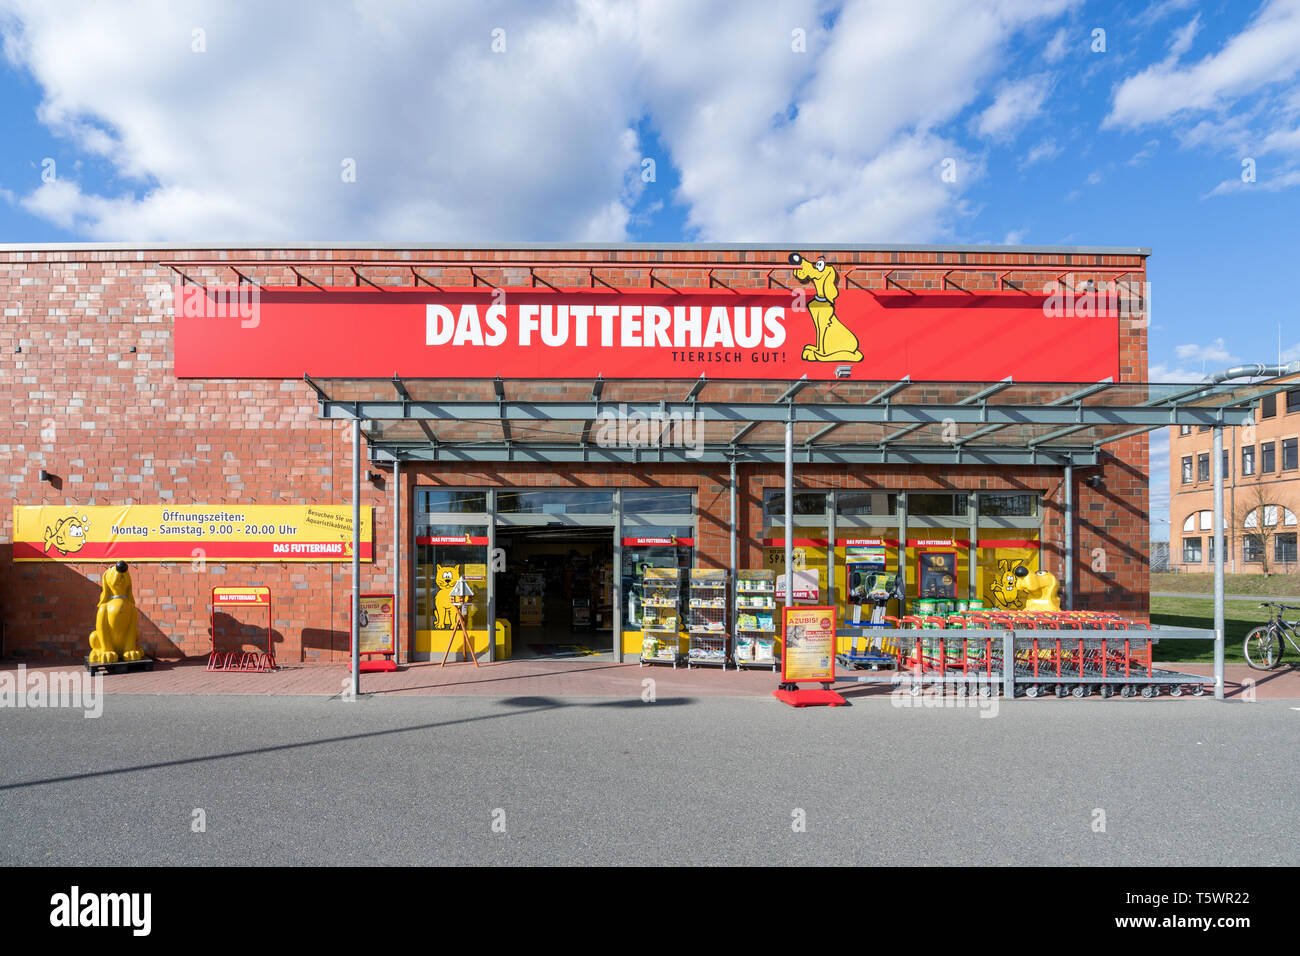 Das Futterhaus store in Norderstedt. Futterhaus Das è una delle più grande della Germania alimentazione pet rivenditore al dettaglio con più di 300 località su tutto il territorio nazionale. Foto Stock